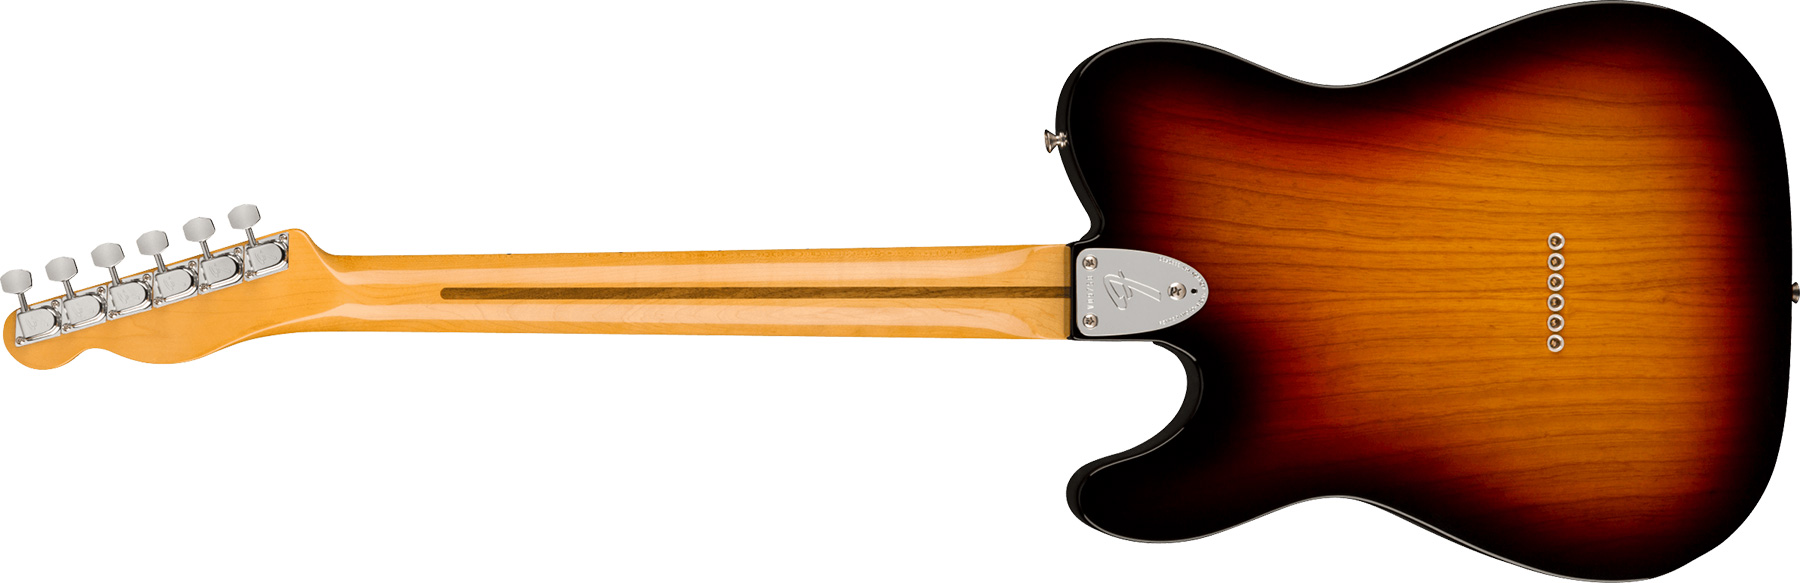 Fender Tele Thinline 1972 American Vintage Ii Usa 2h Ht Mn - 3-color Sunburst - E-Gitarre in Teleform - Variation 1